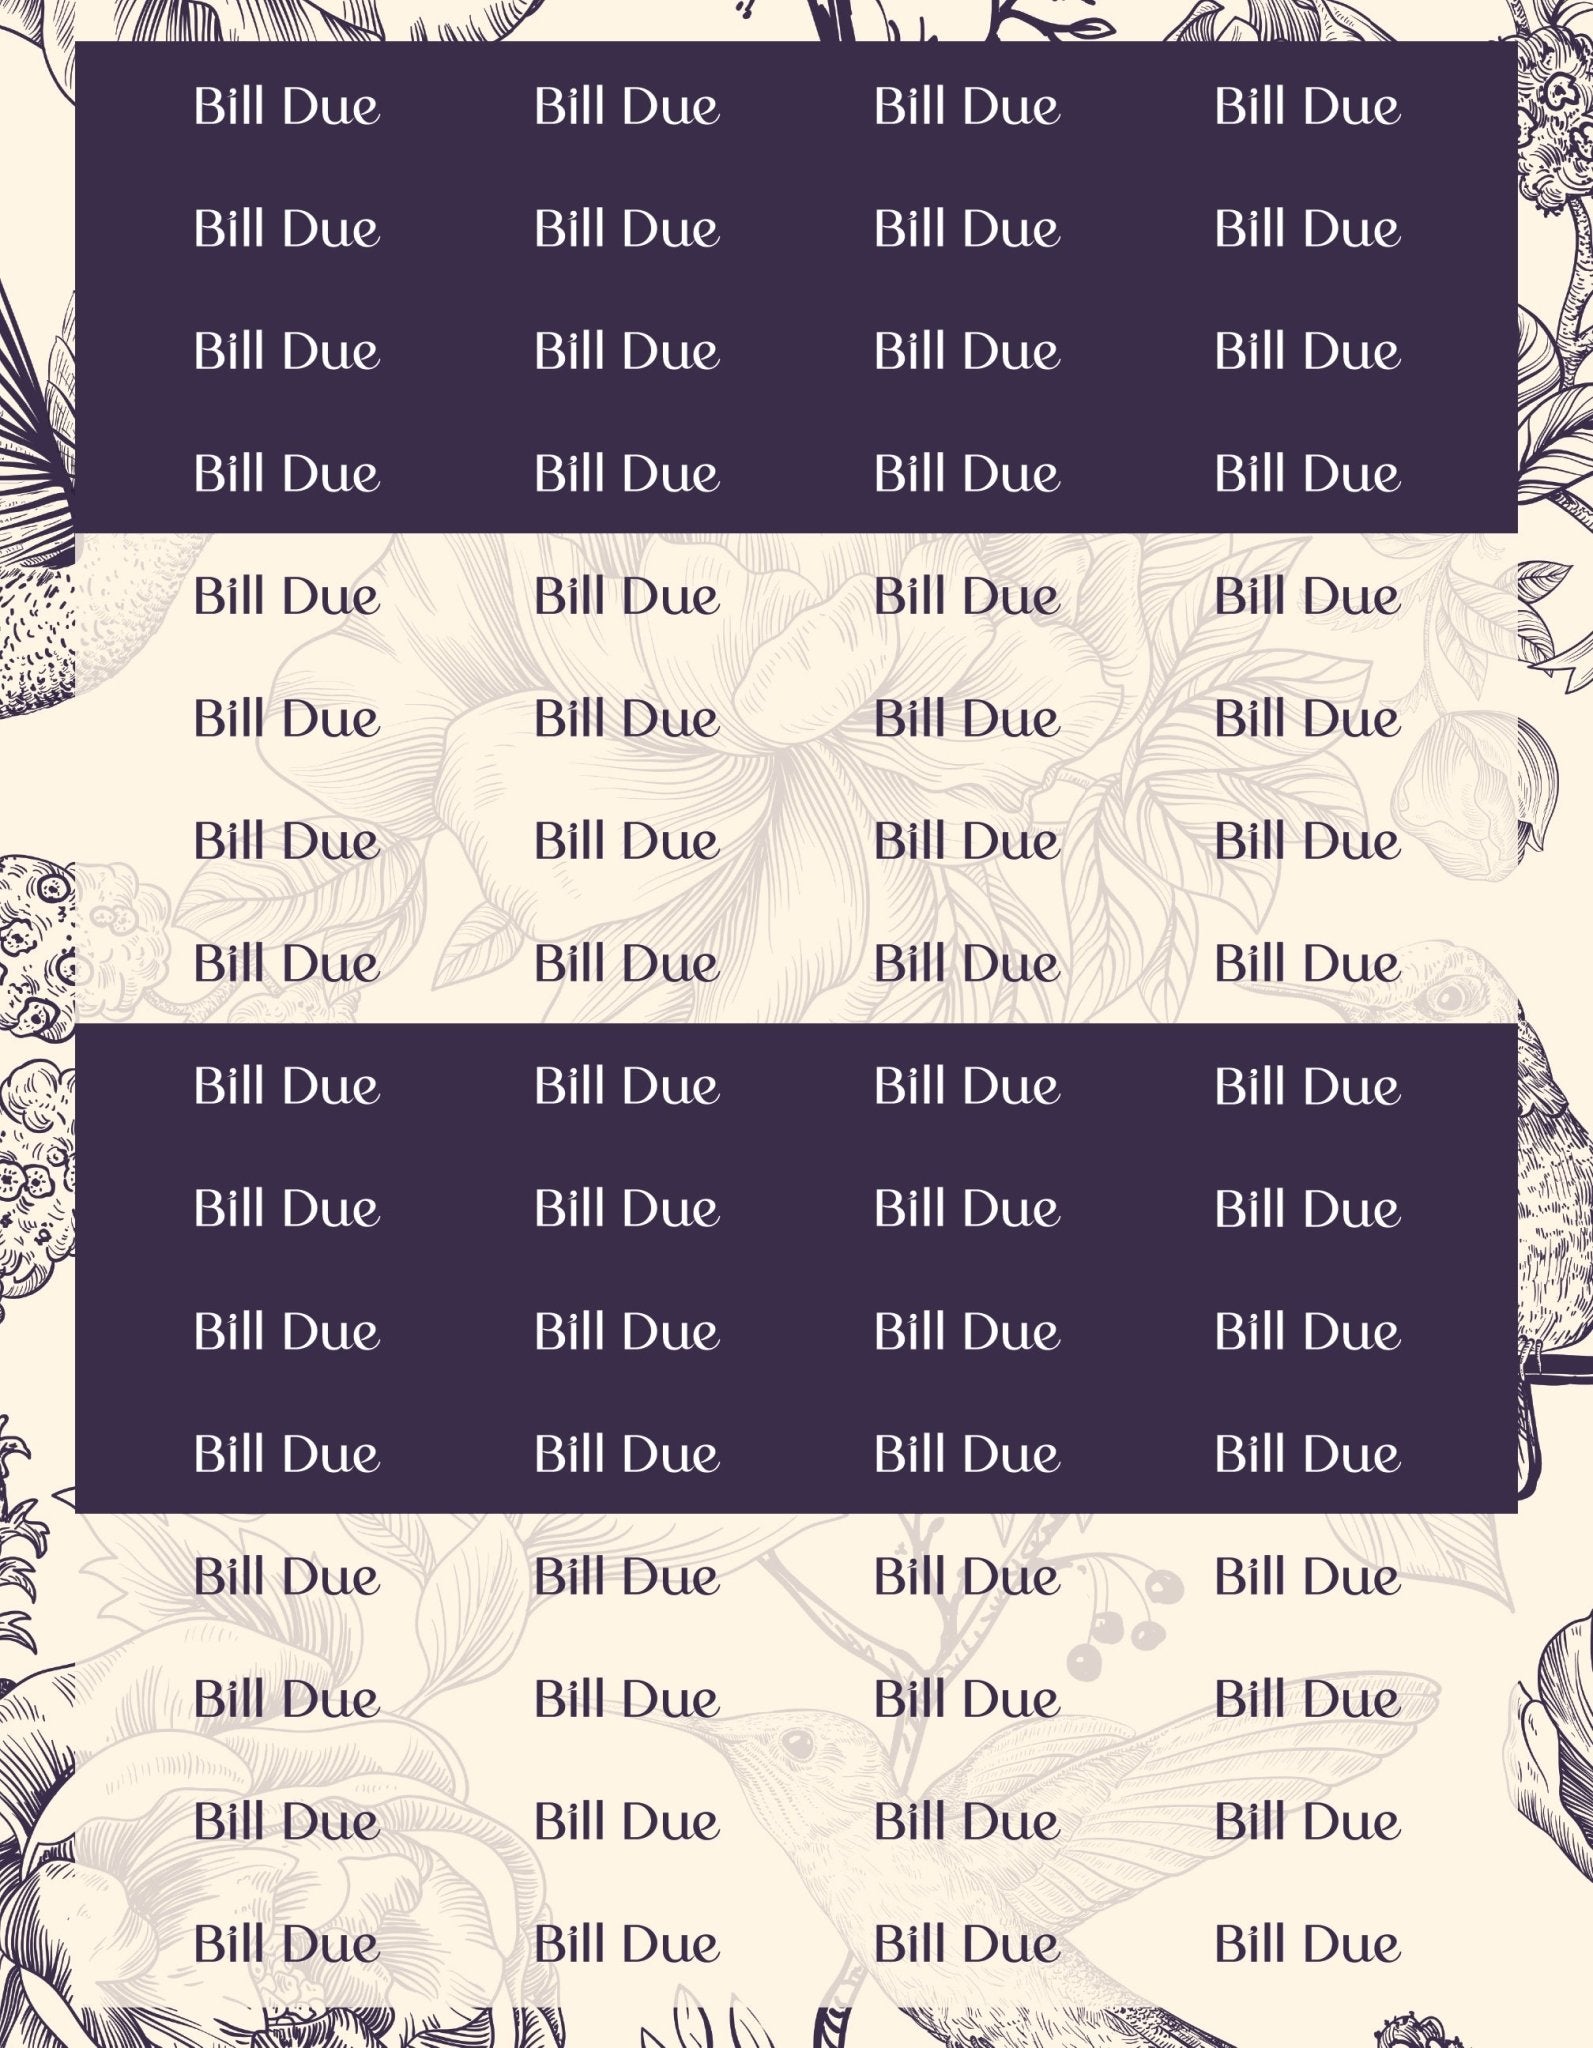 Bill Due Sticker Sheets - 9 Designs/Colors - Colibri Paper Co